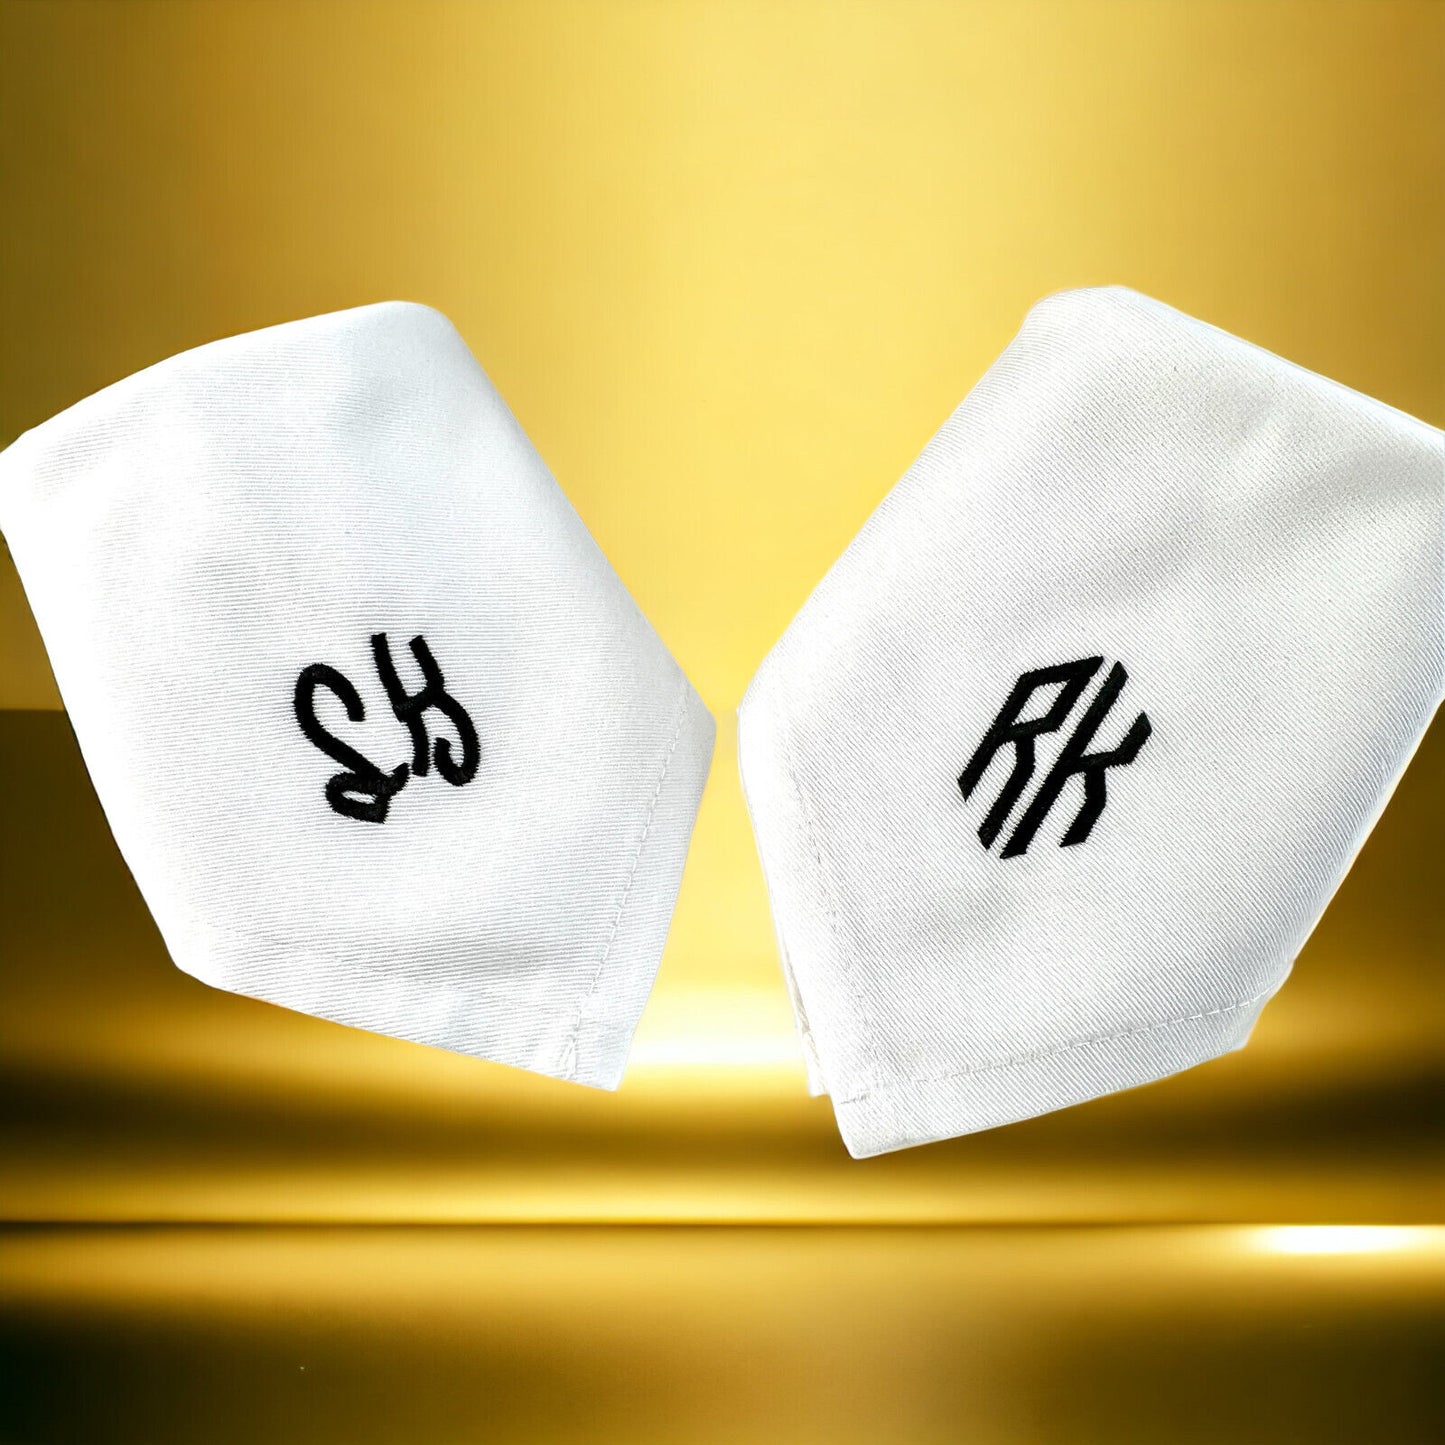 Bestickte Serviette mit Monogramm für den festlichen Esstisch personalisiert